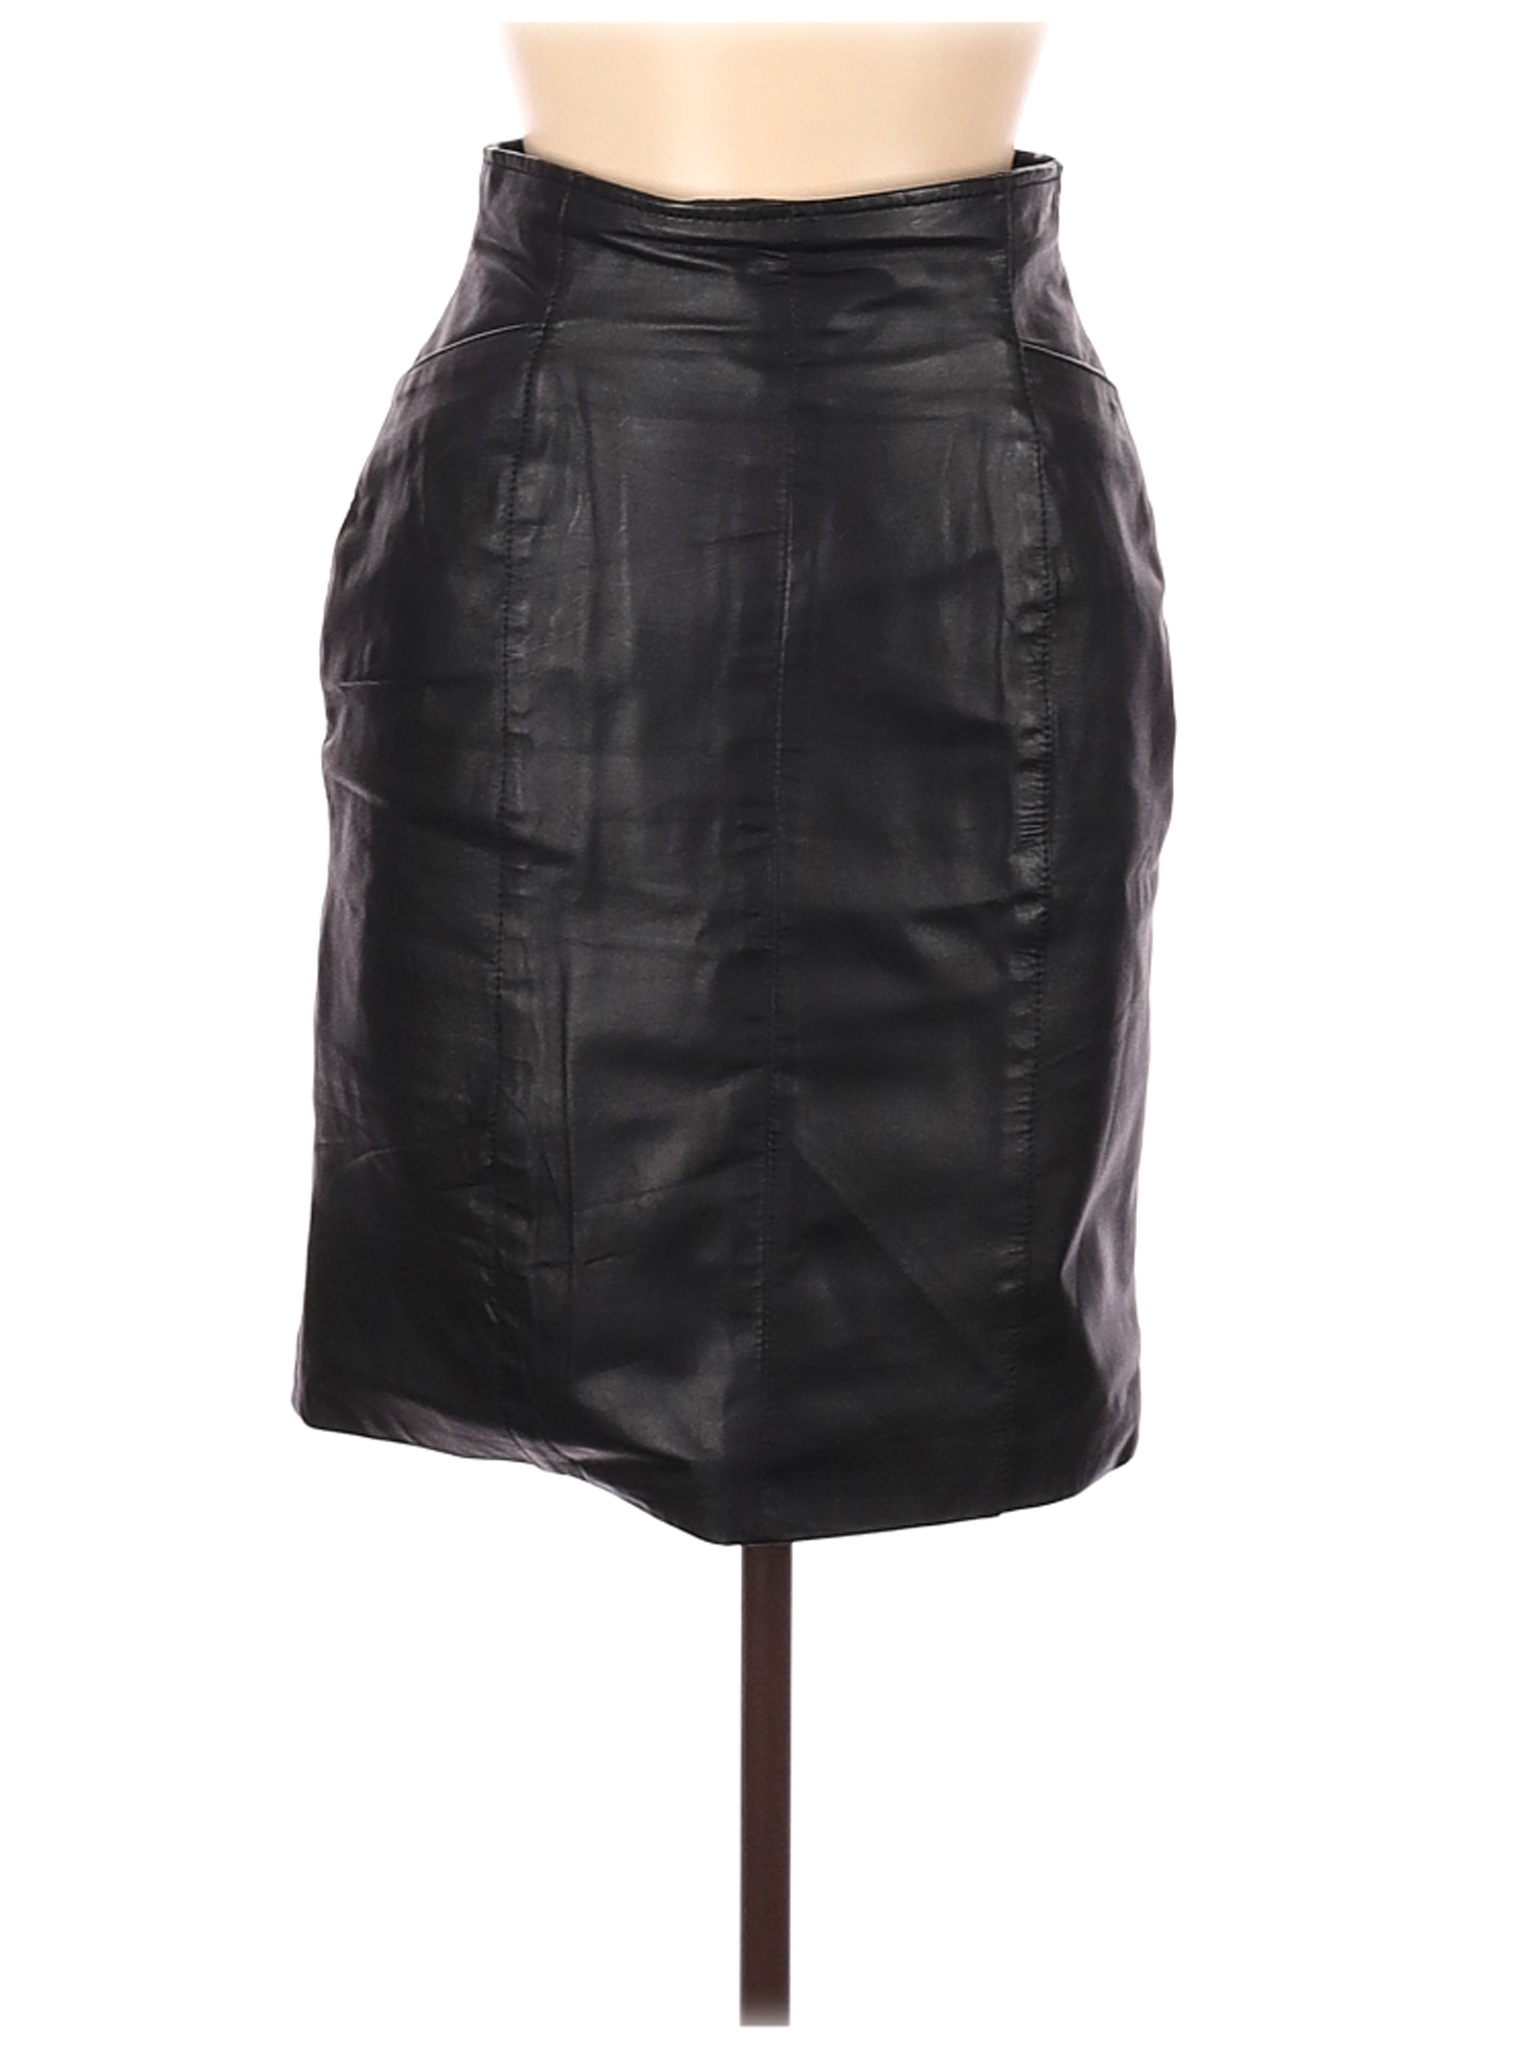 Wilsons Leather Women Black Leather Skirt 6 | eBay